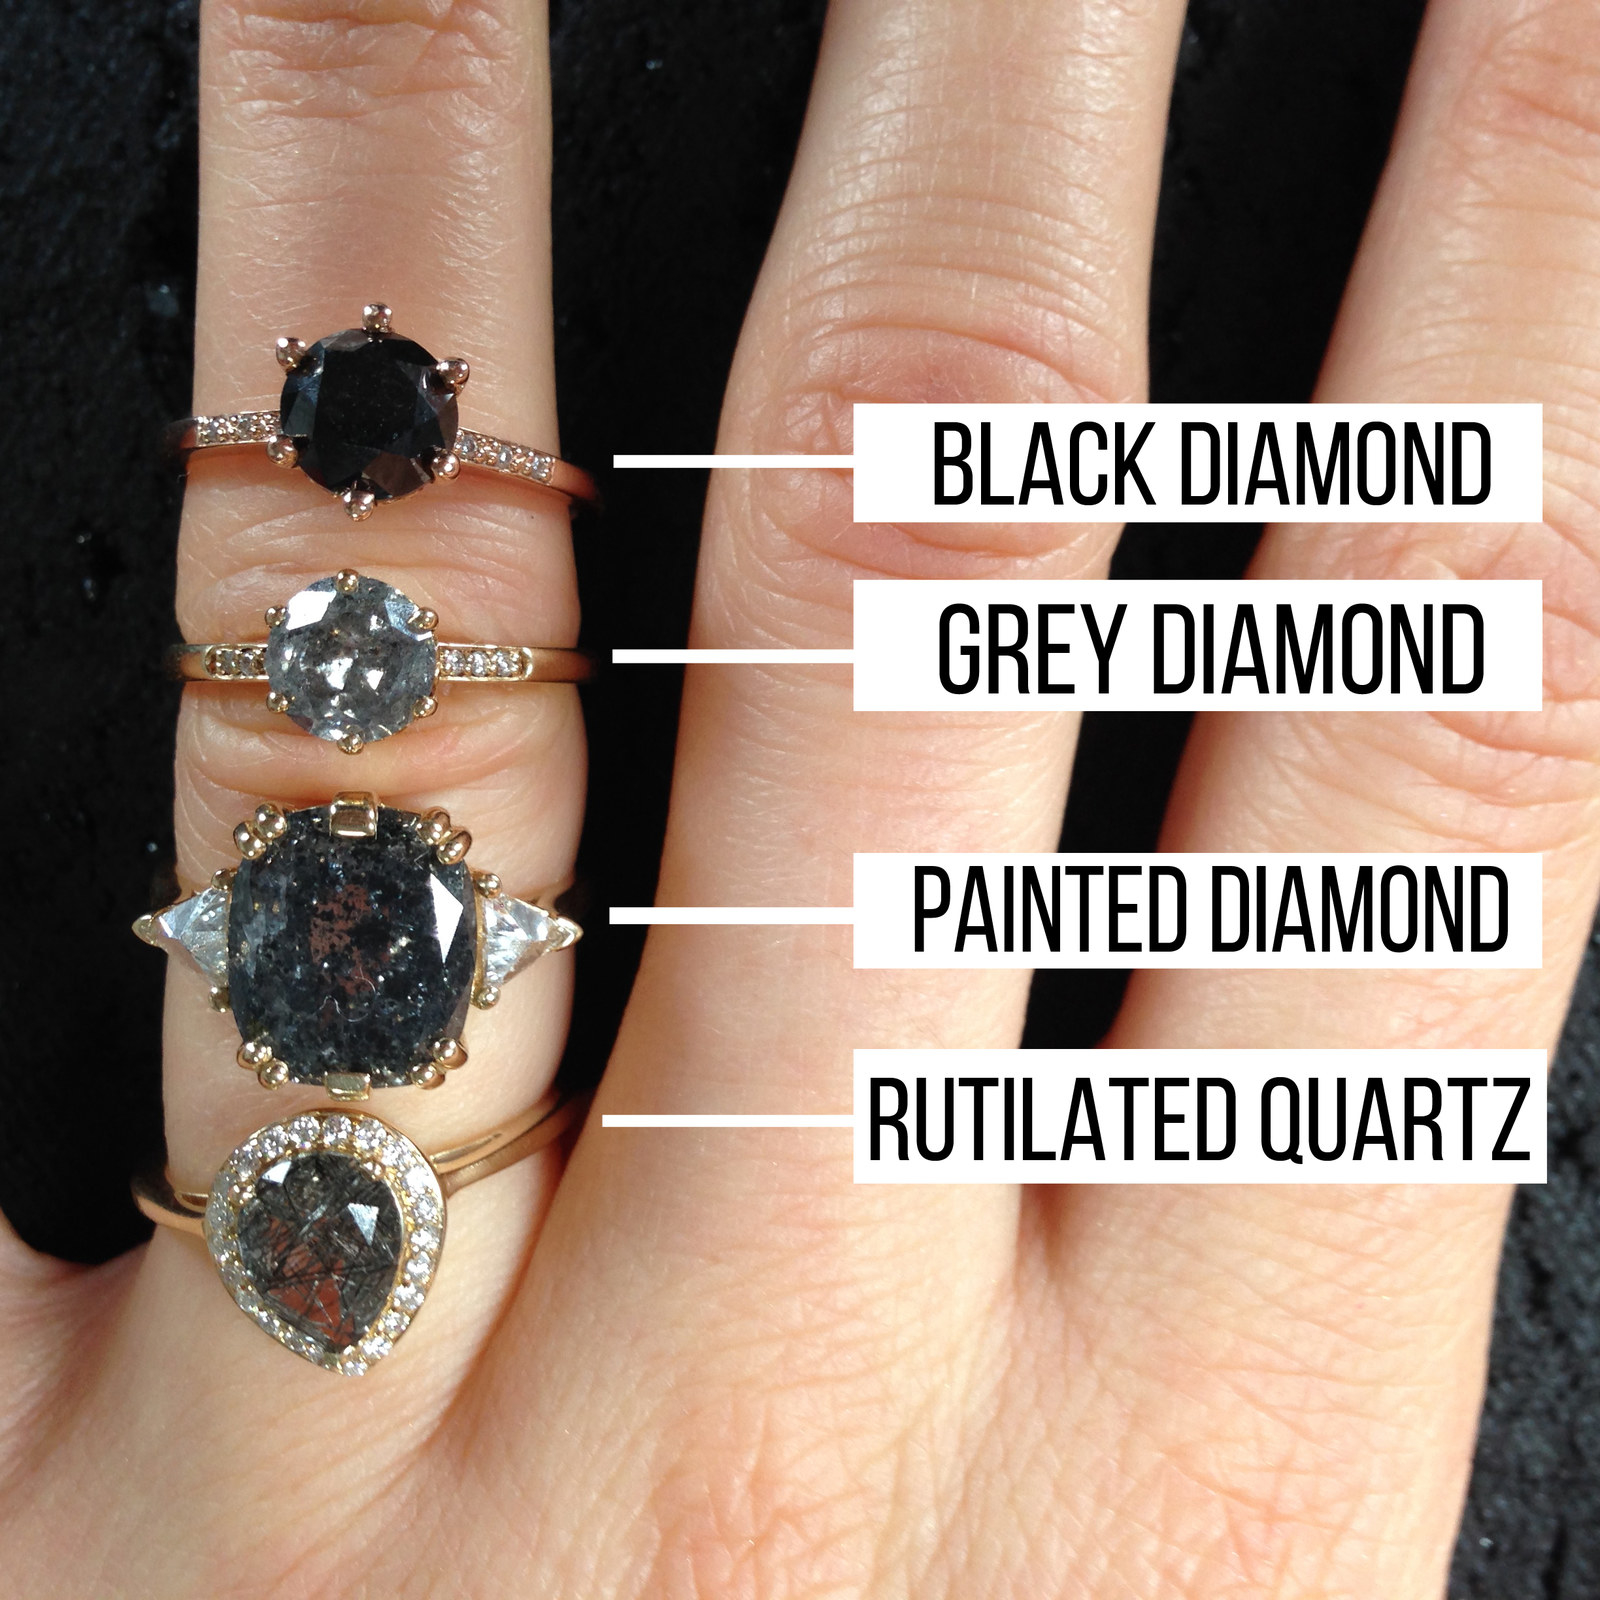 Проверить подлинность бриллианта кольце. Черные бриллианты дороже.